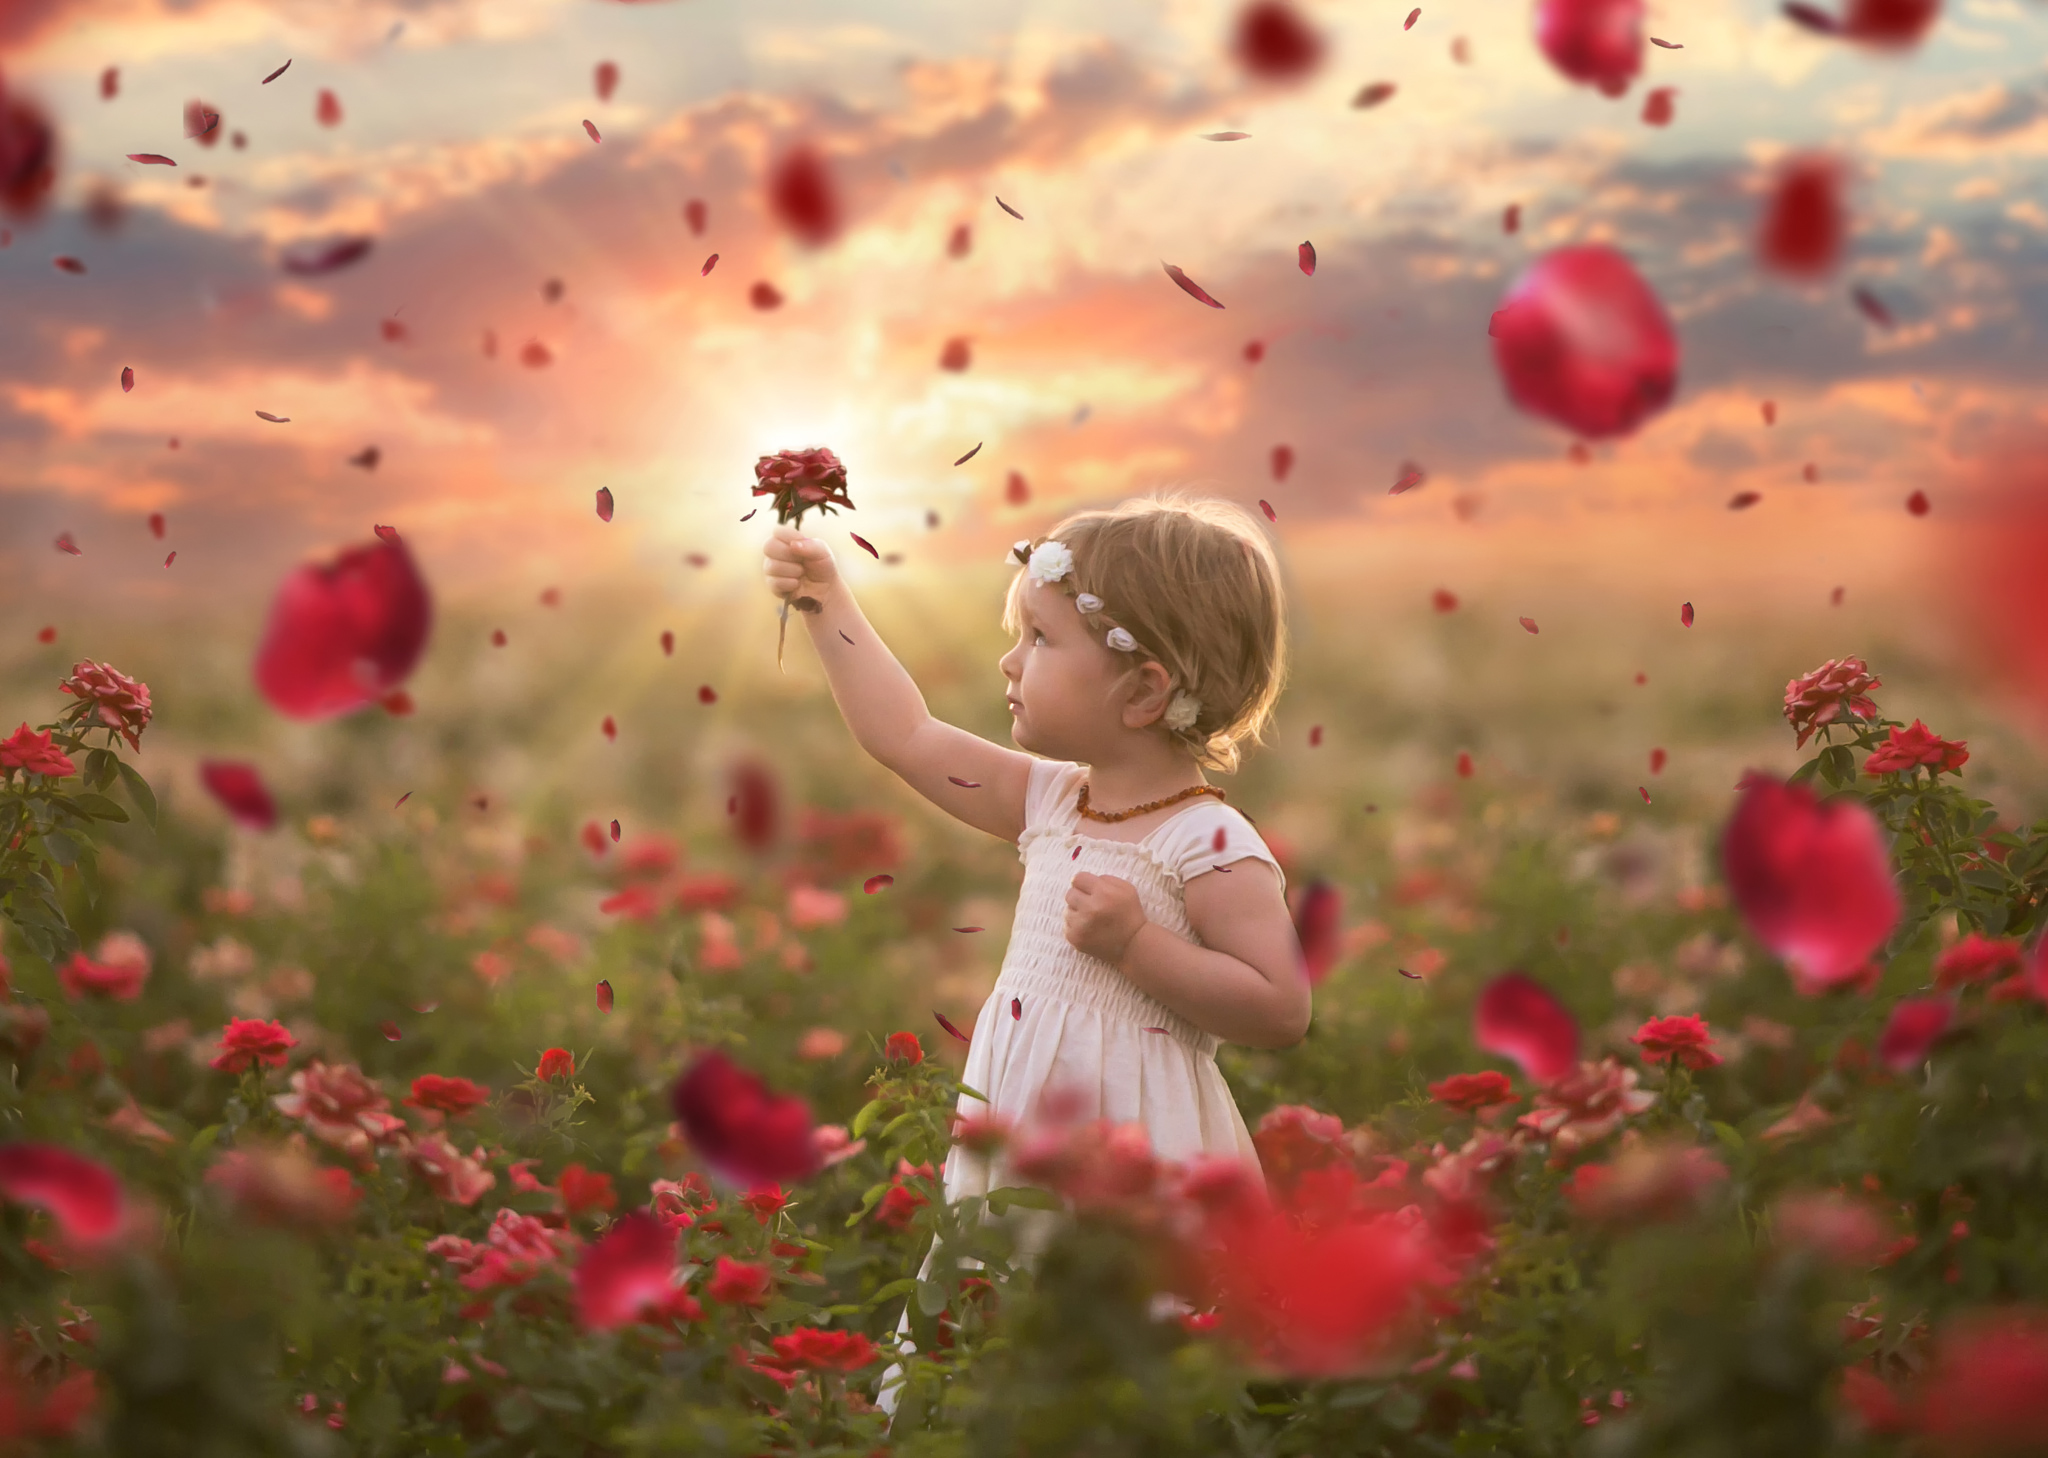 Добро картинки красивые. Прекрасное детство. Доброта радость. Цветы для девочки. Ребенок с цветком в руках.